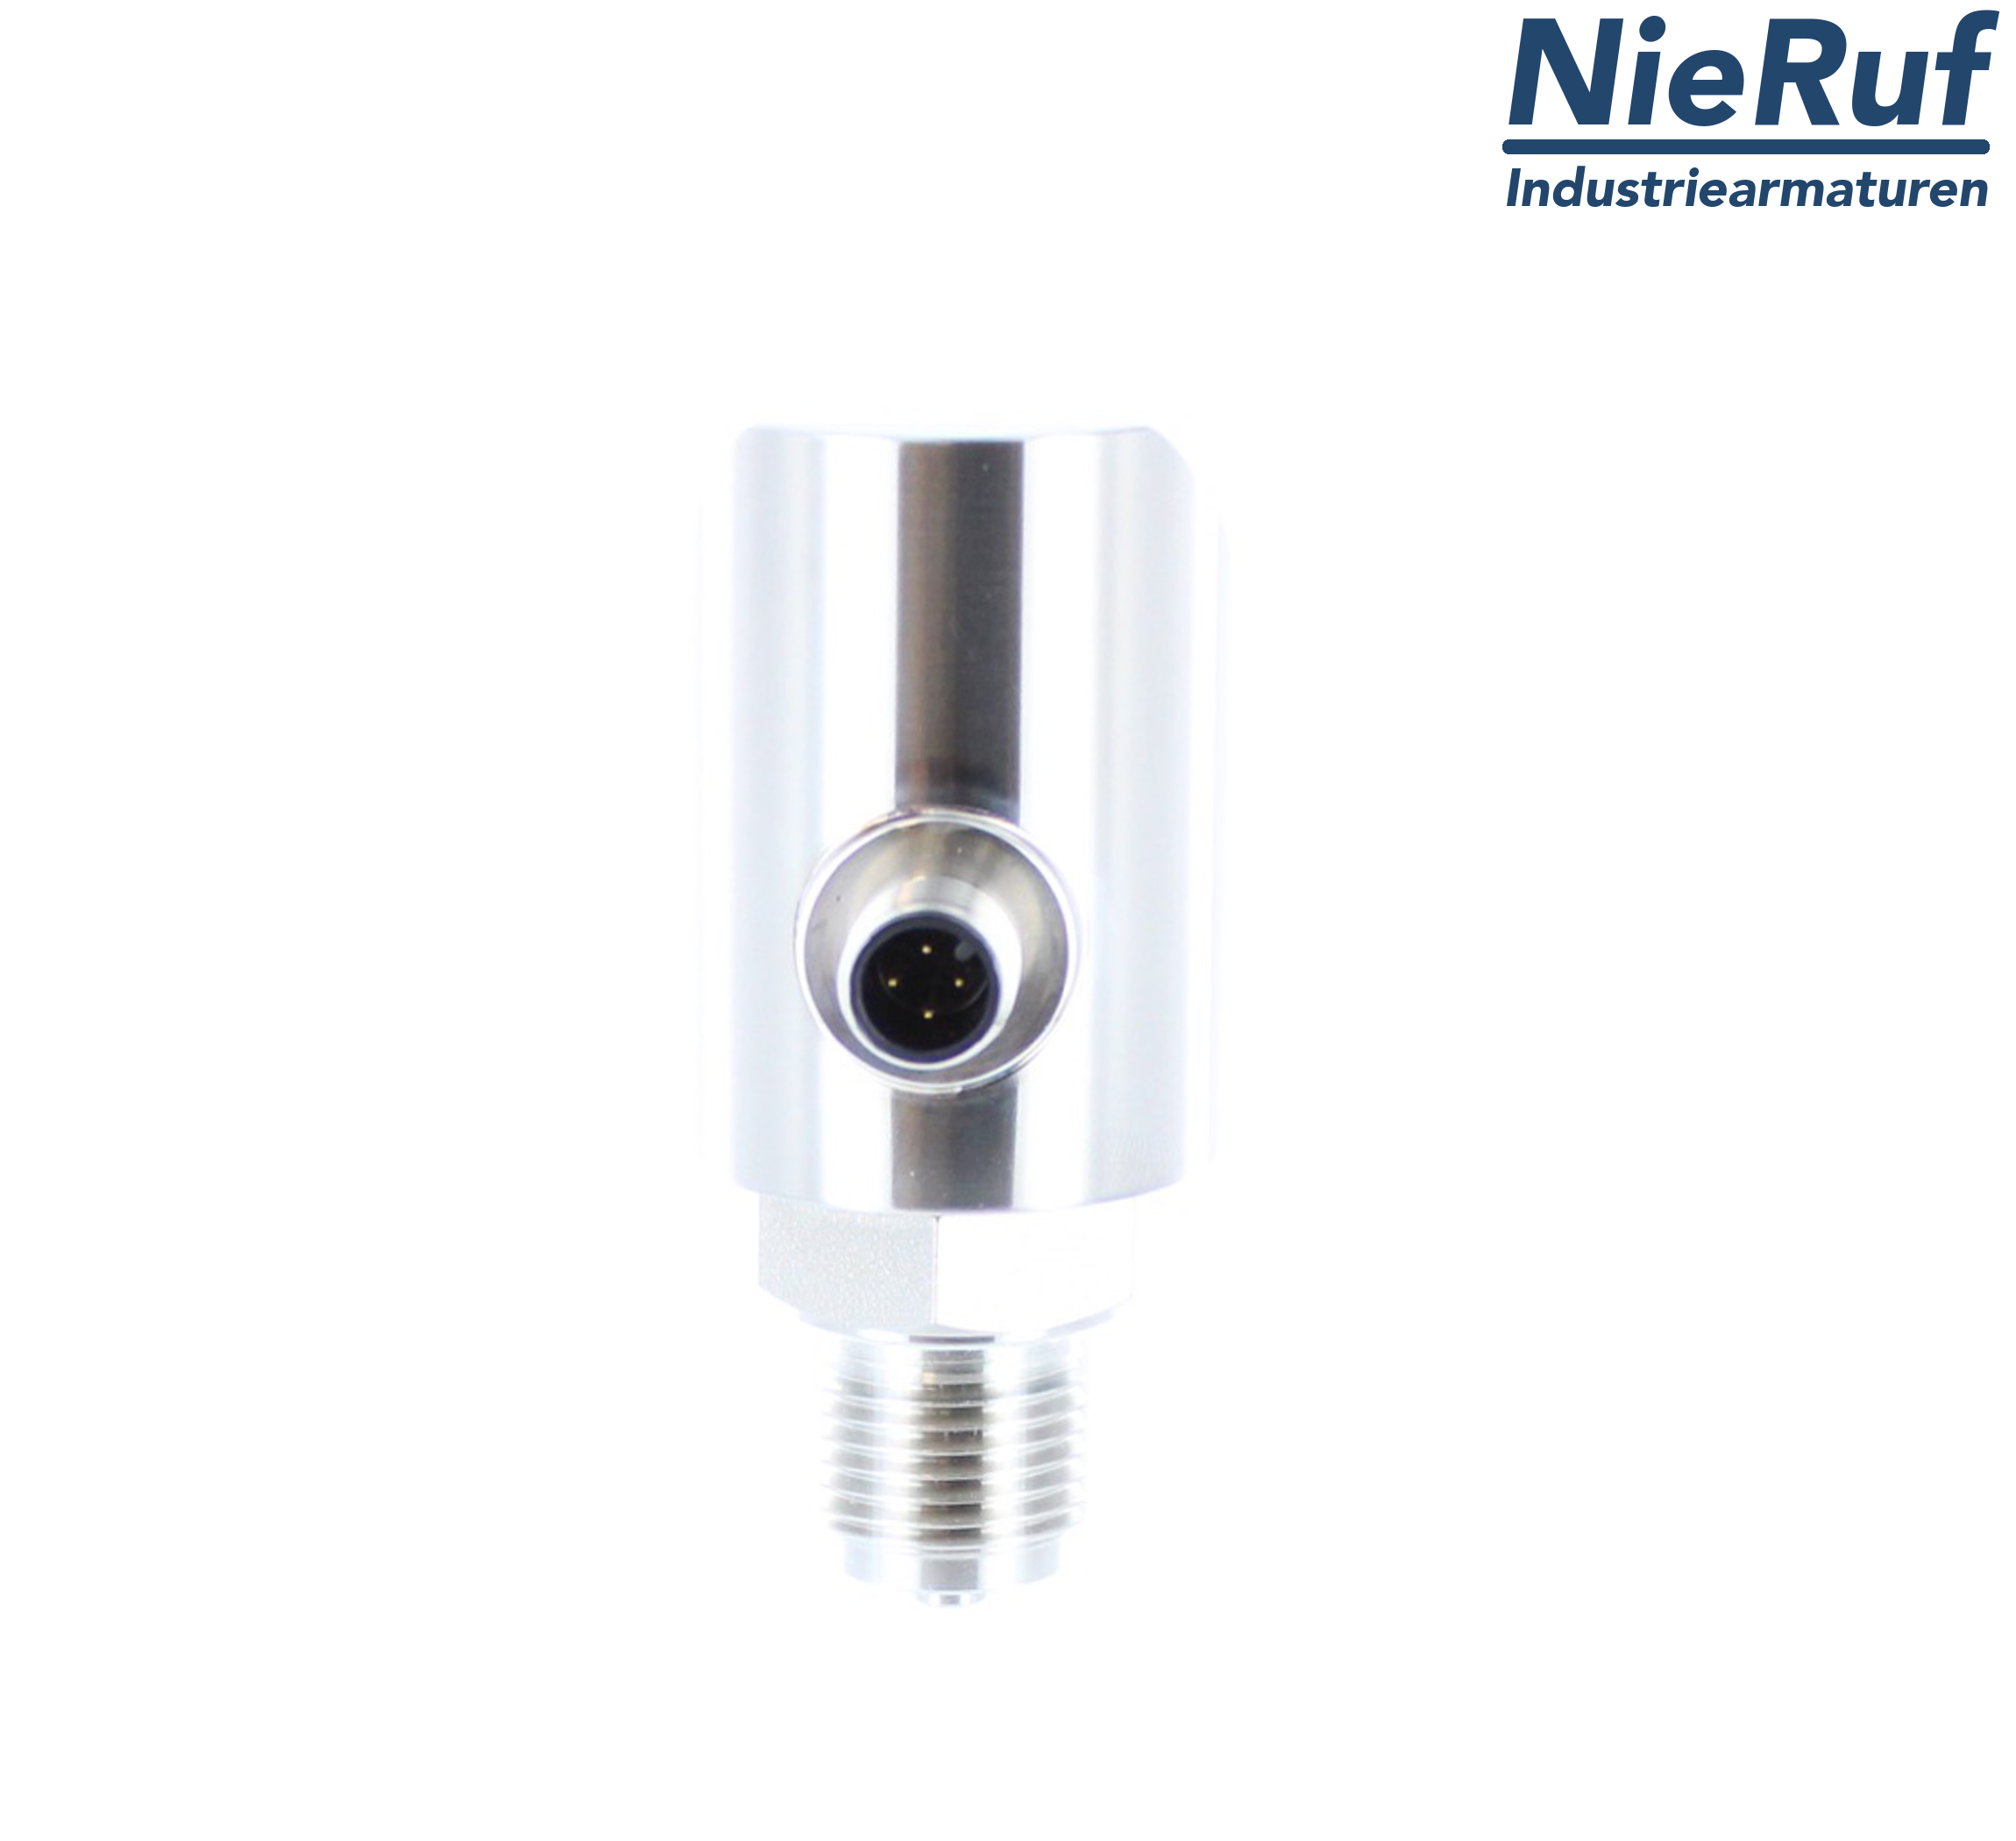 digital pressure sensor G 1/2" B IB 4-wire: 1xPNP, 1x4 - 20mA, Desina FPM 0,0 - 16,0 bar